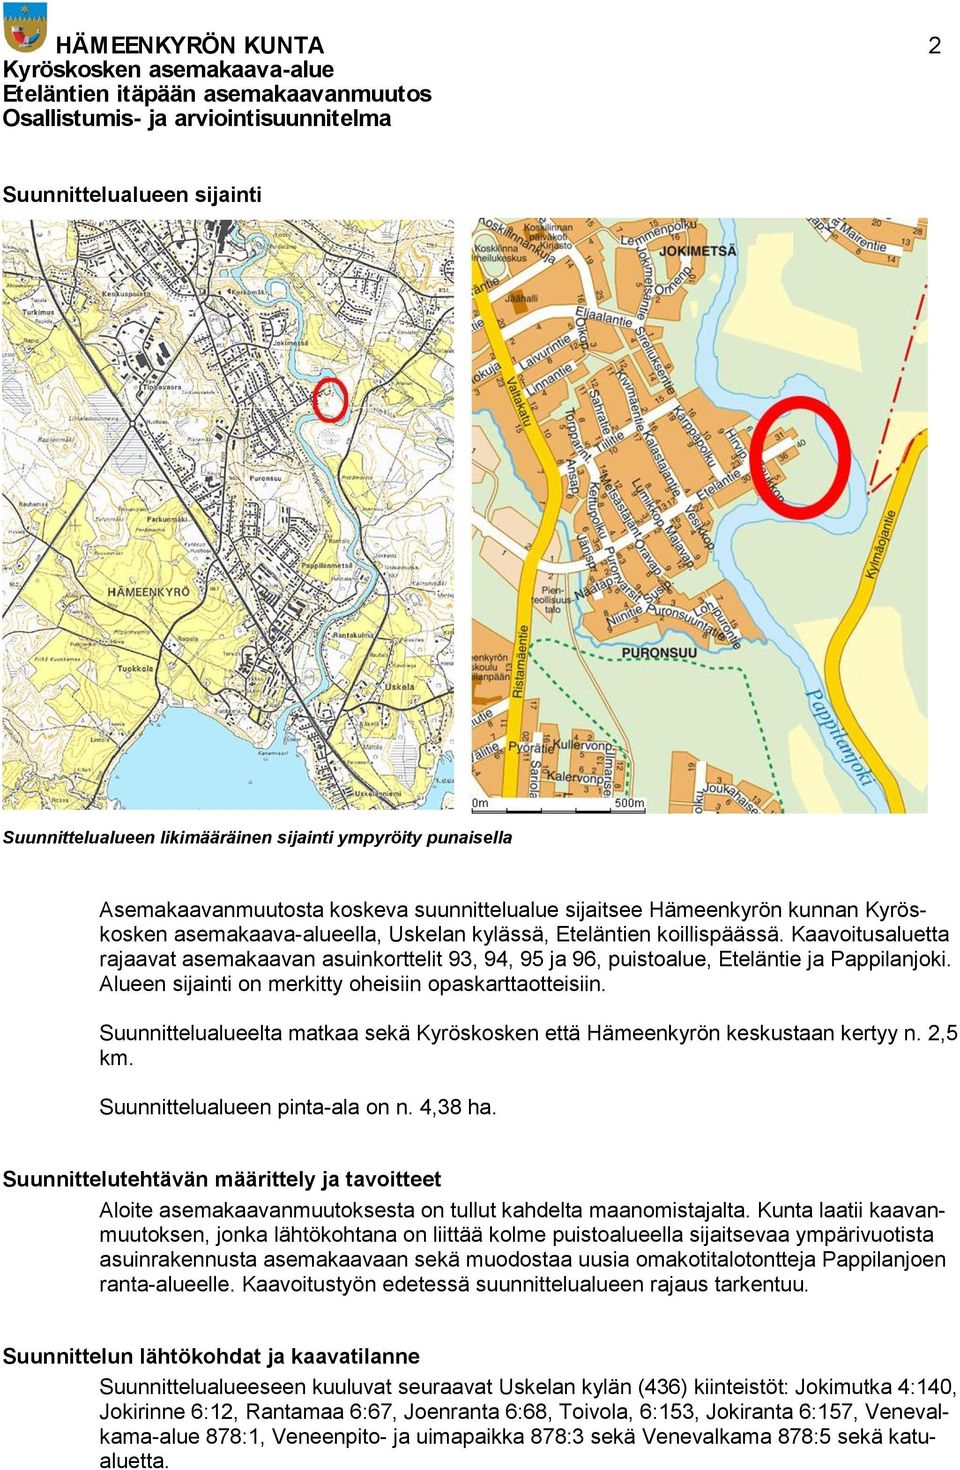 Alueen sijainti on merkitty oheisiin opaskarttaotteisiin. Suunnittelualueelta matkaa sekä Kyröskosken että Hämeenkyrön keskustaan kertyy n. 2,5 km. Suunnittelualueen pinta-ala on n. 4,38 ha.